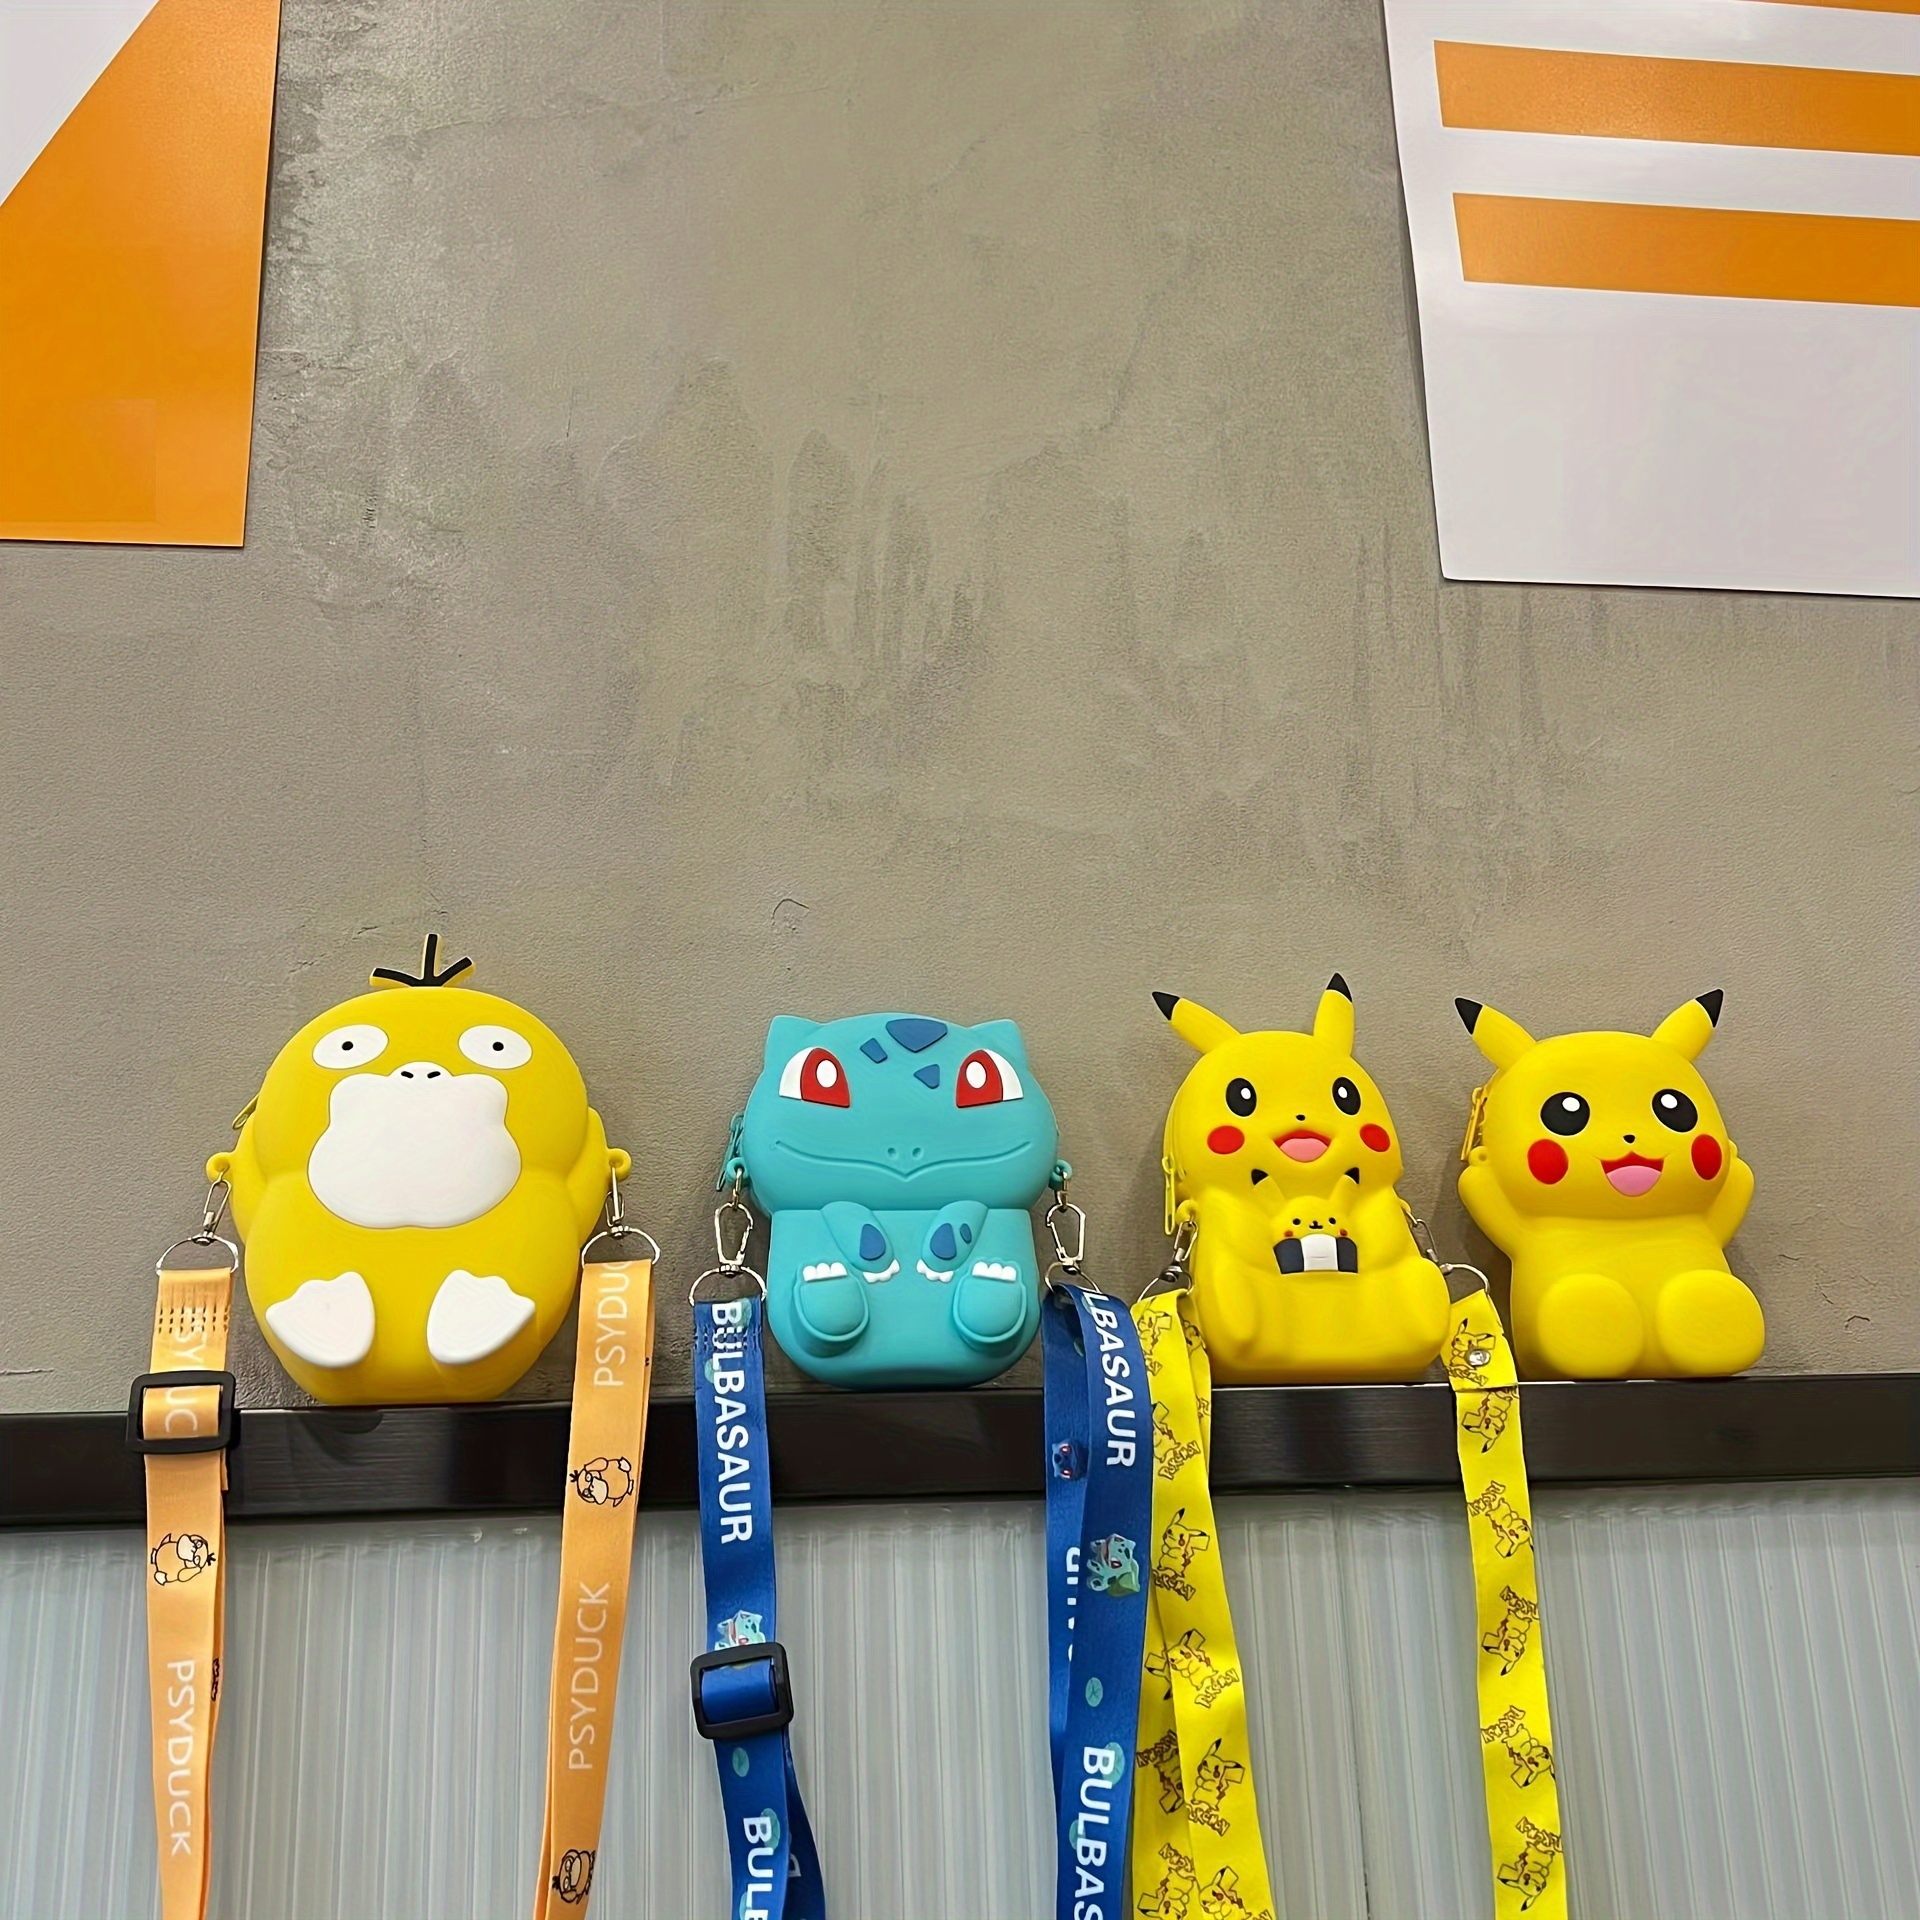 Pokémon Craft - DIY Felt Pikachu Plush